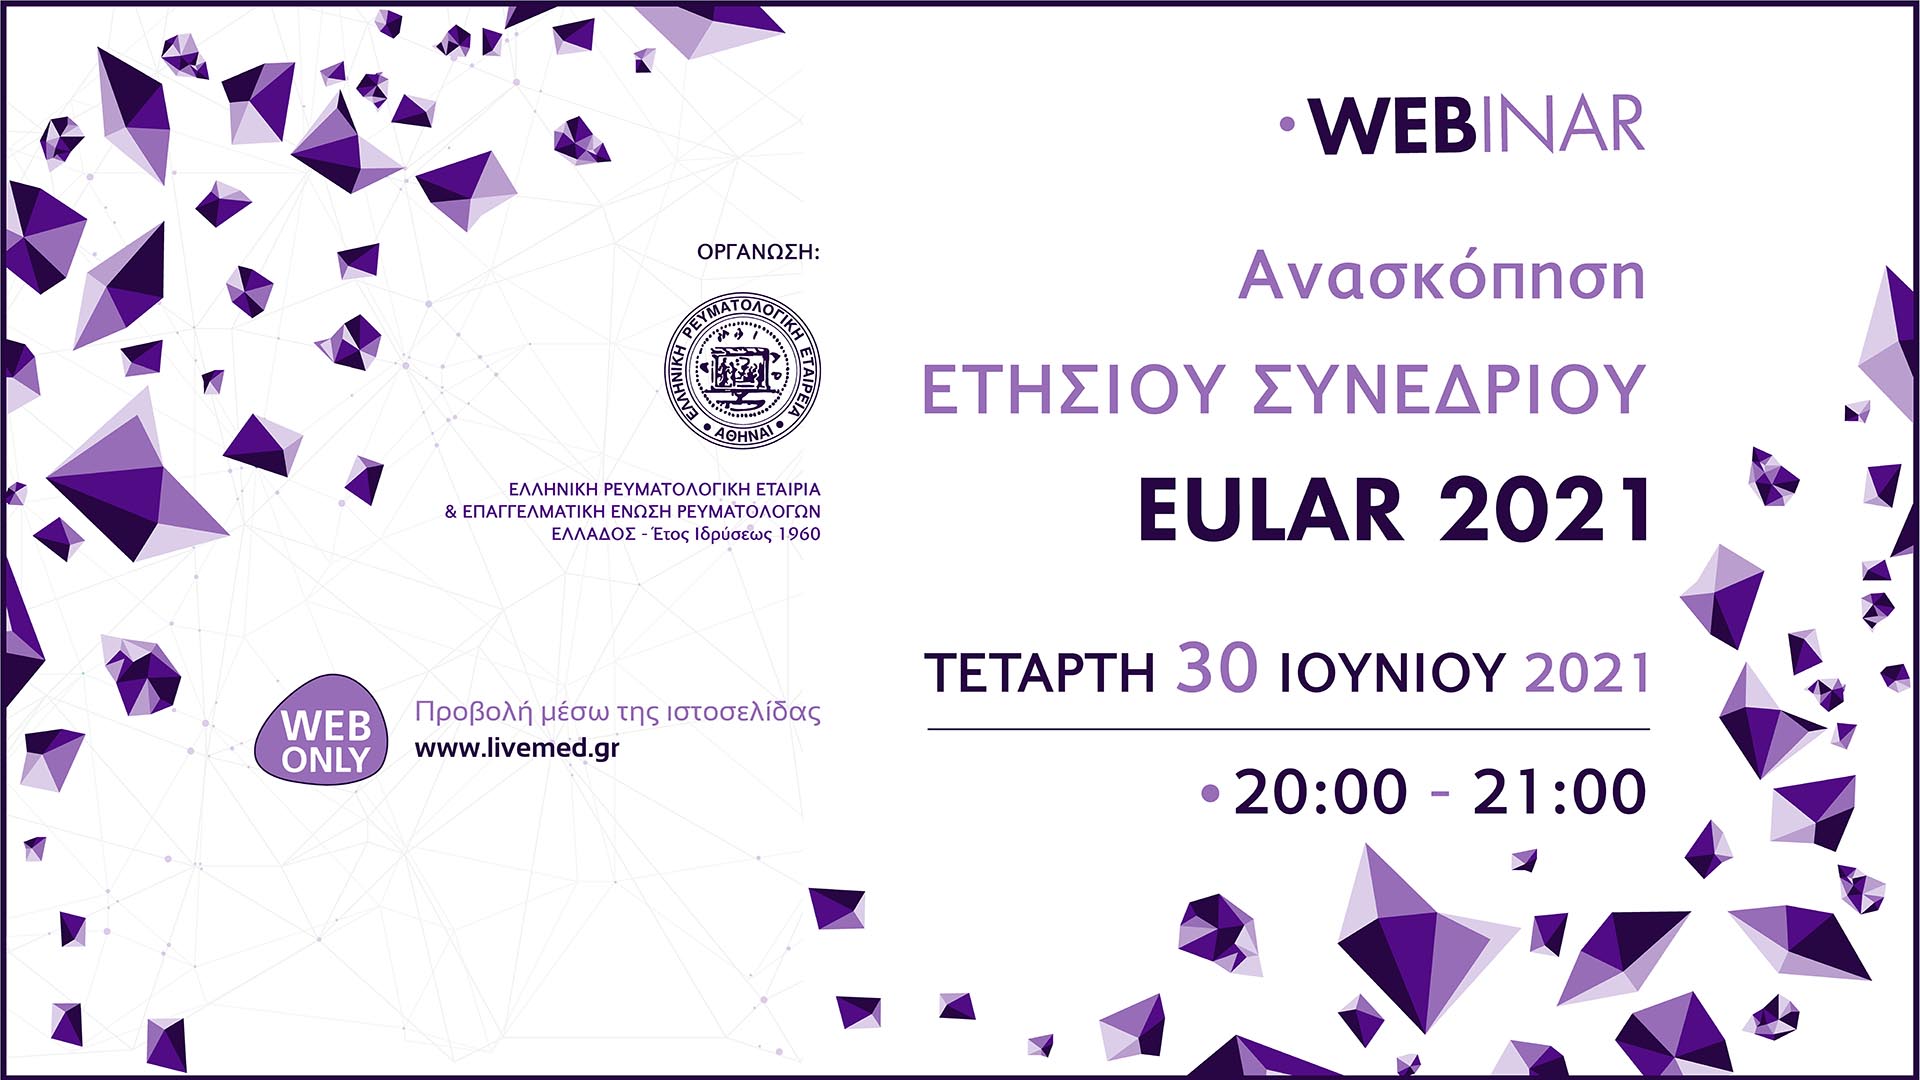 Webinar Ανασκόπηση Ετήσιου Συνεδρίου EULAR 2021